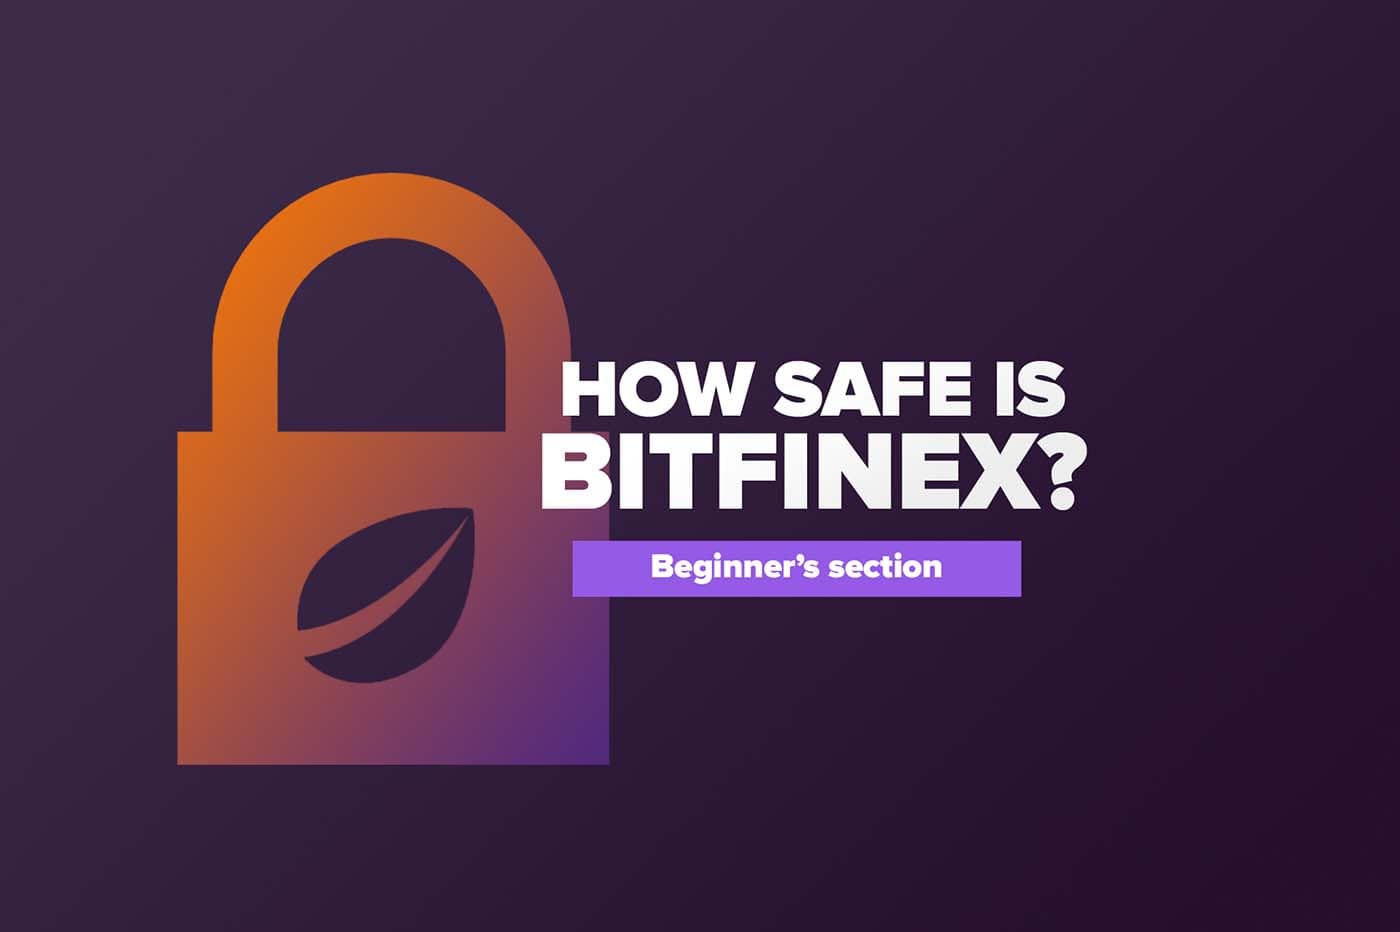 How safe is BITFINEX?